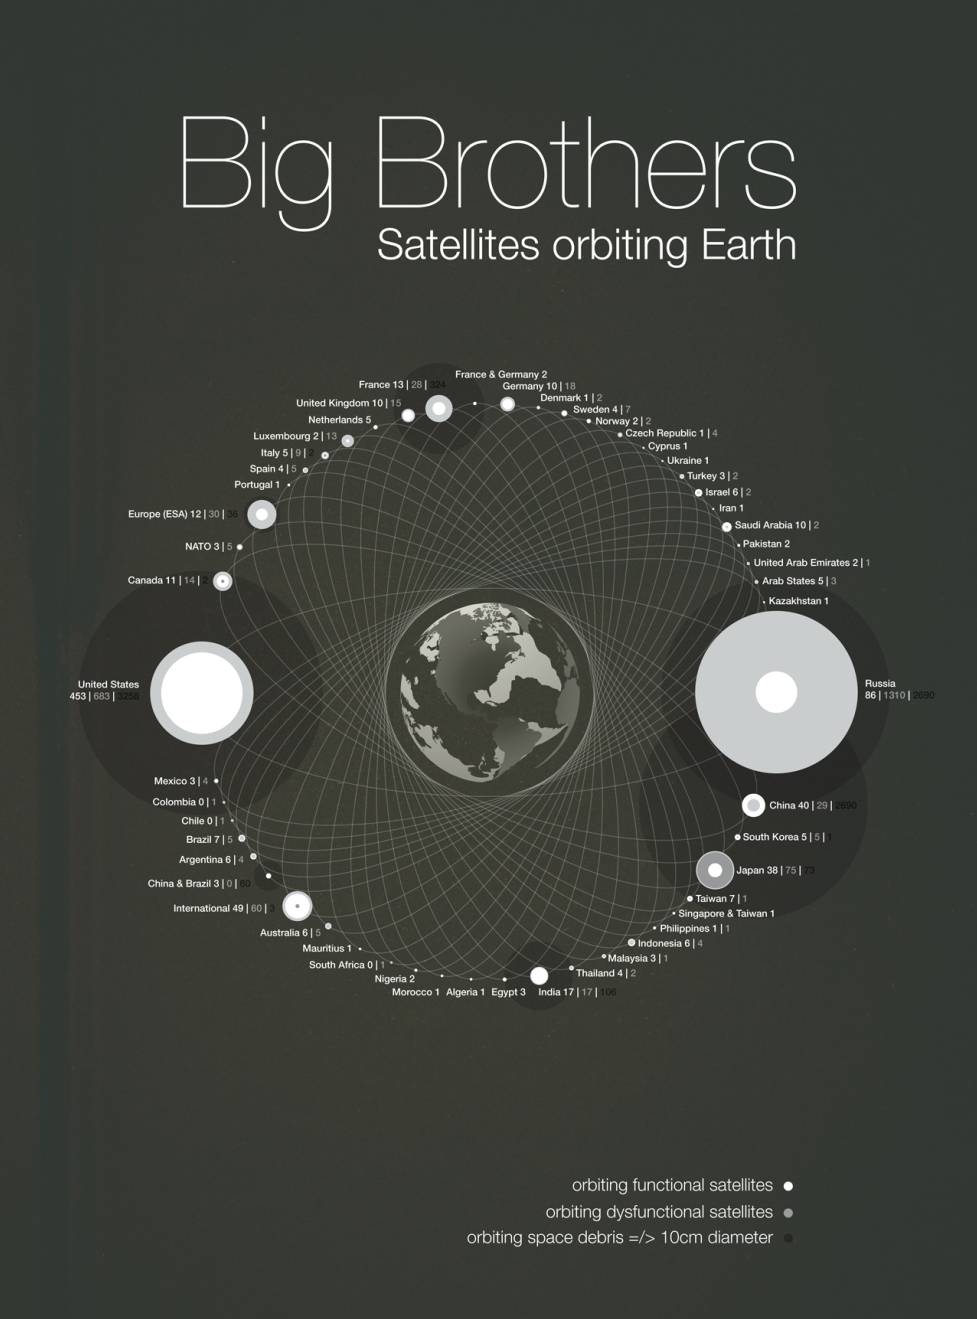 La basura espacial: ranking por países #infografía 1